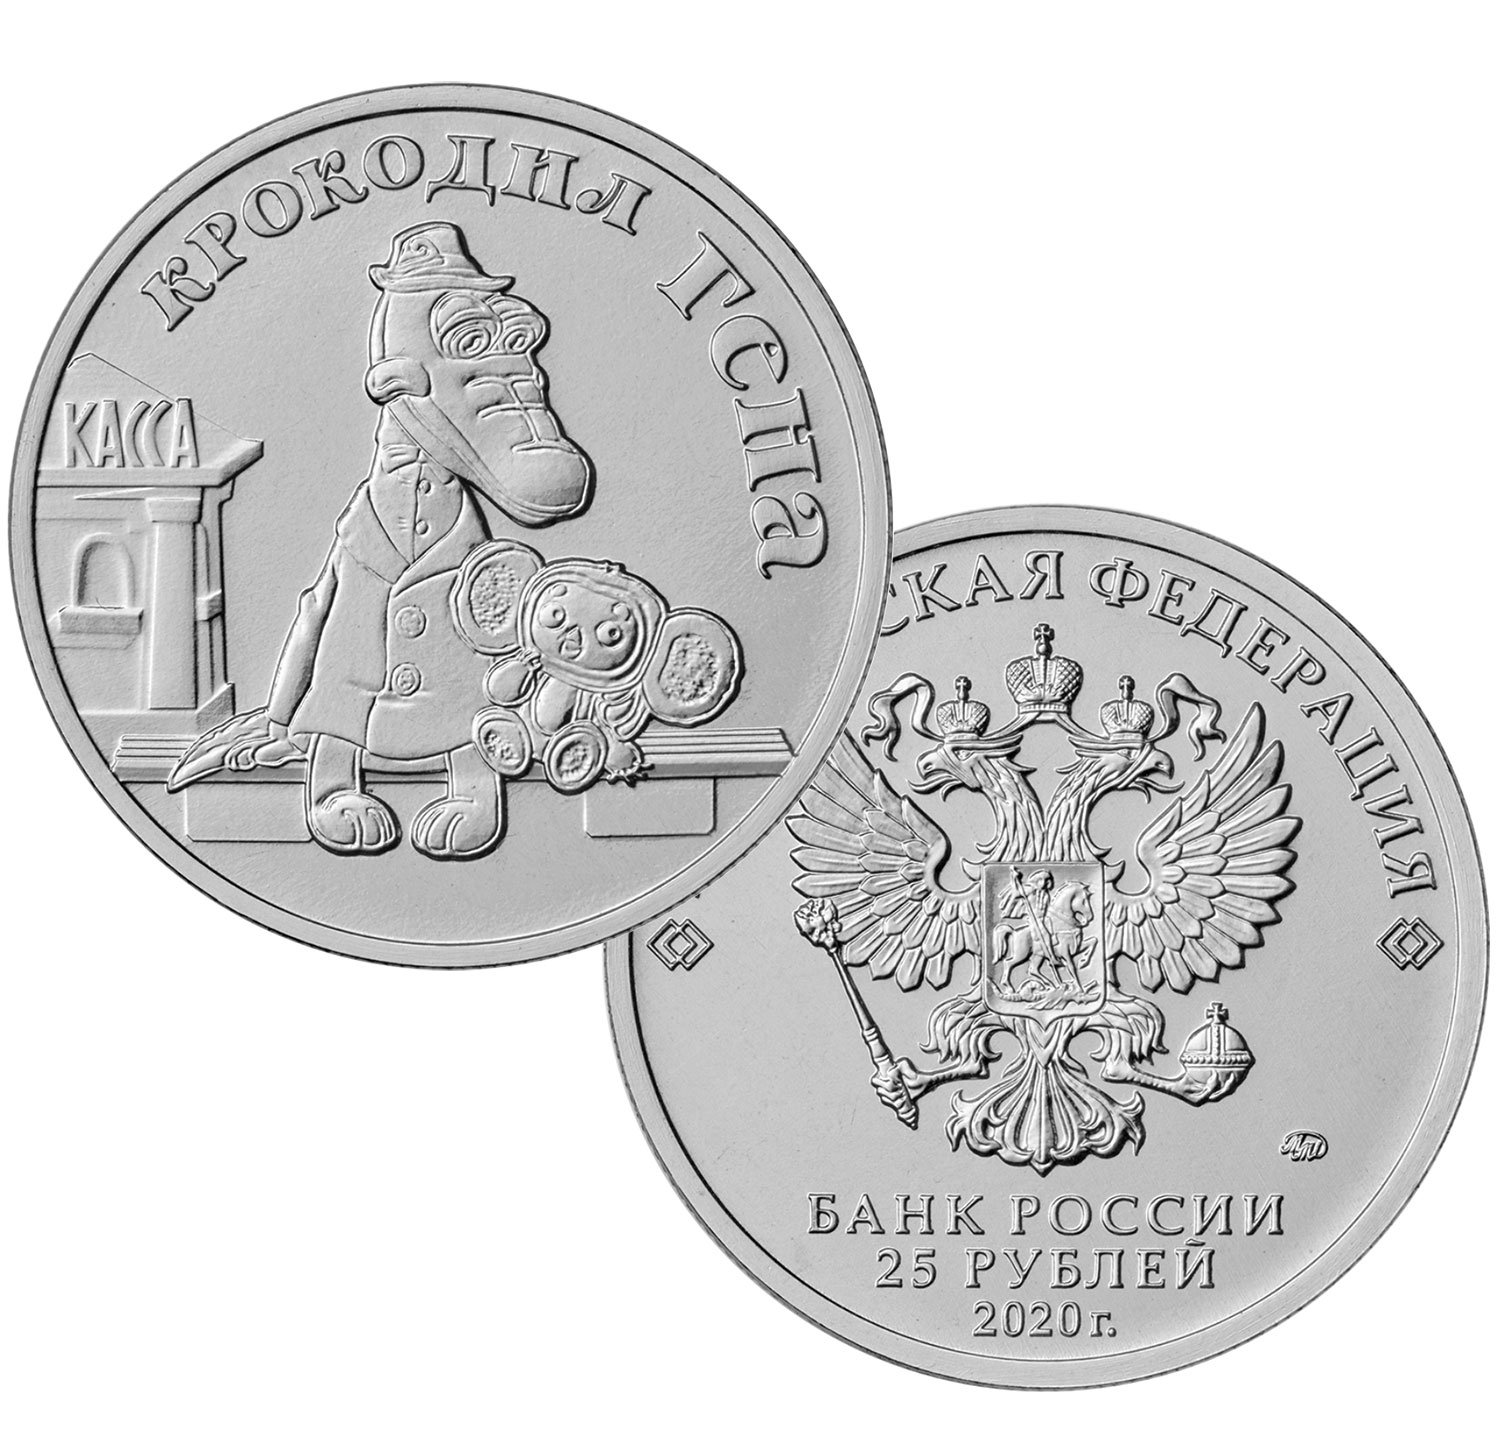 ТОП-10 монет 2020 года